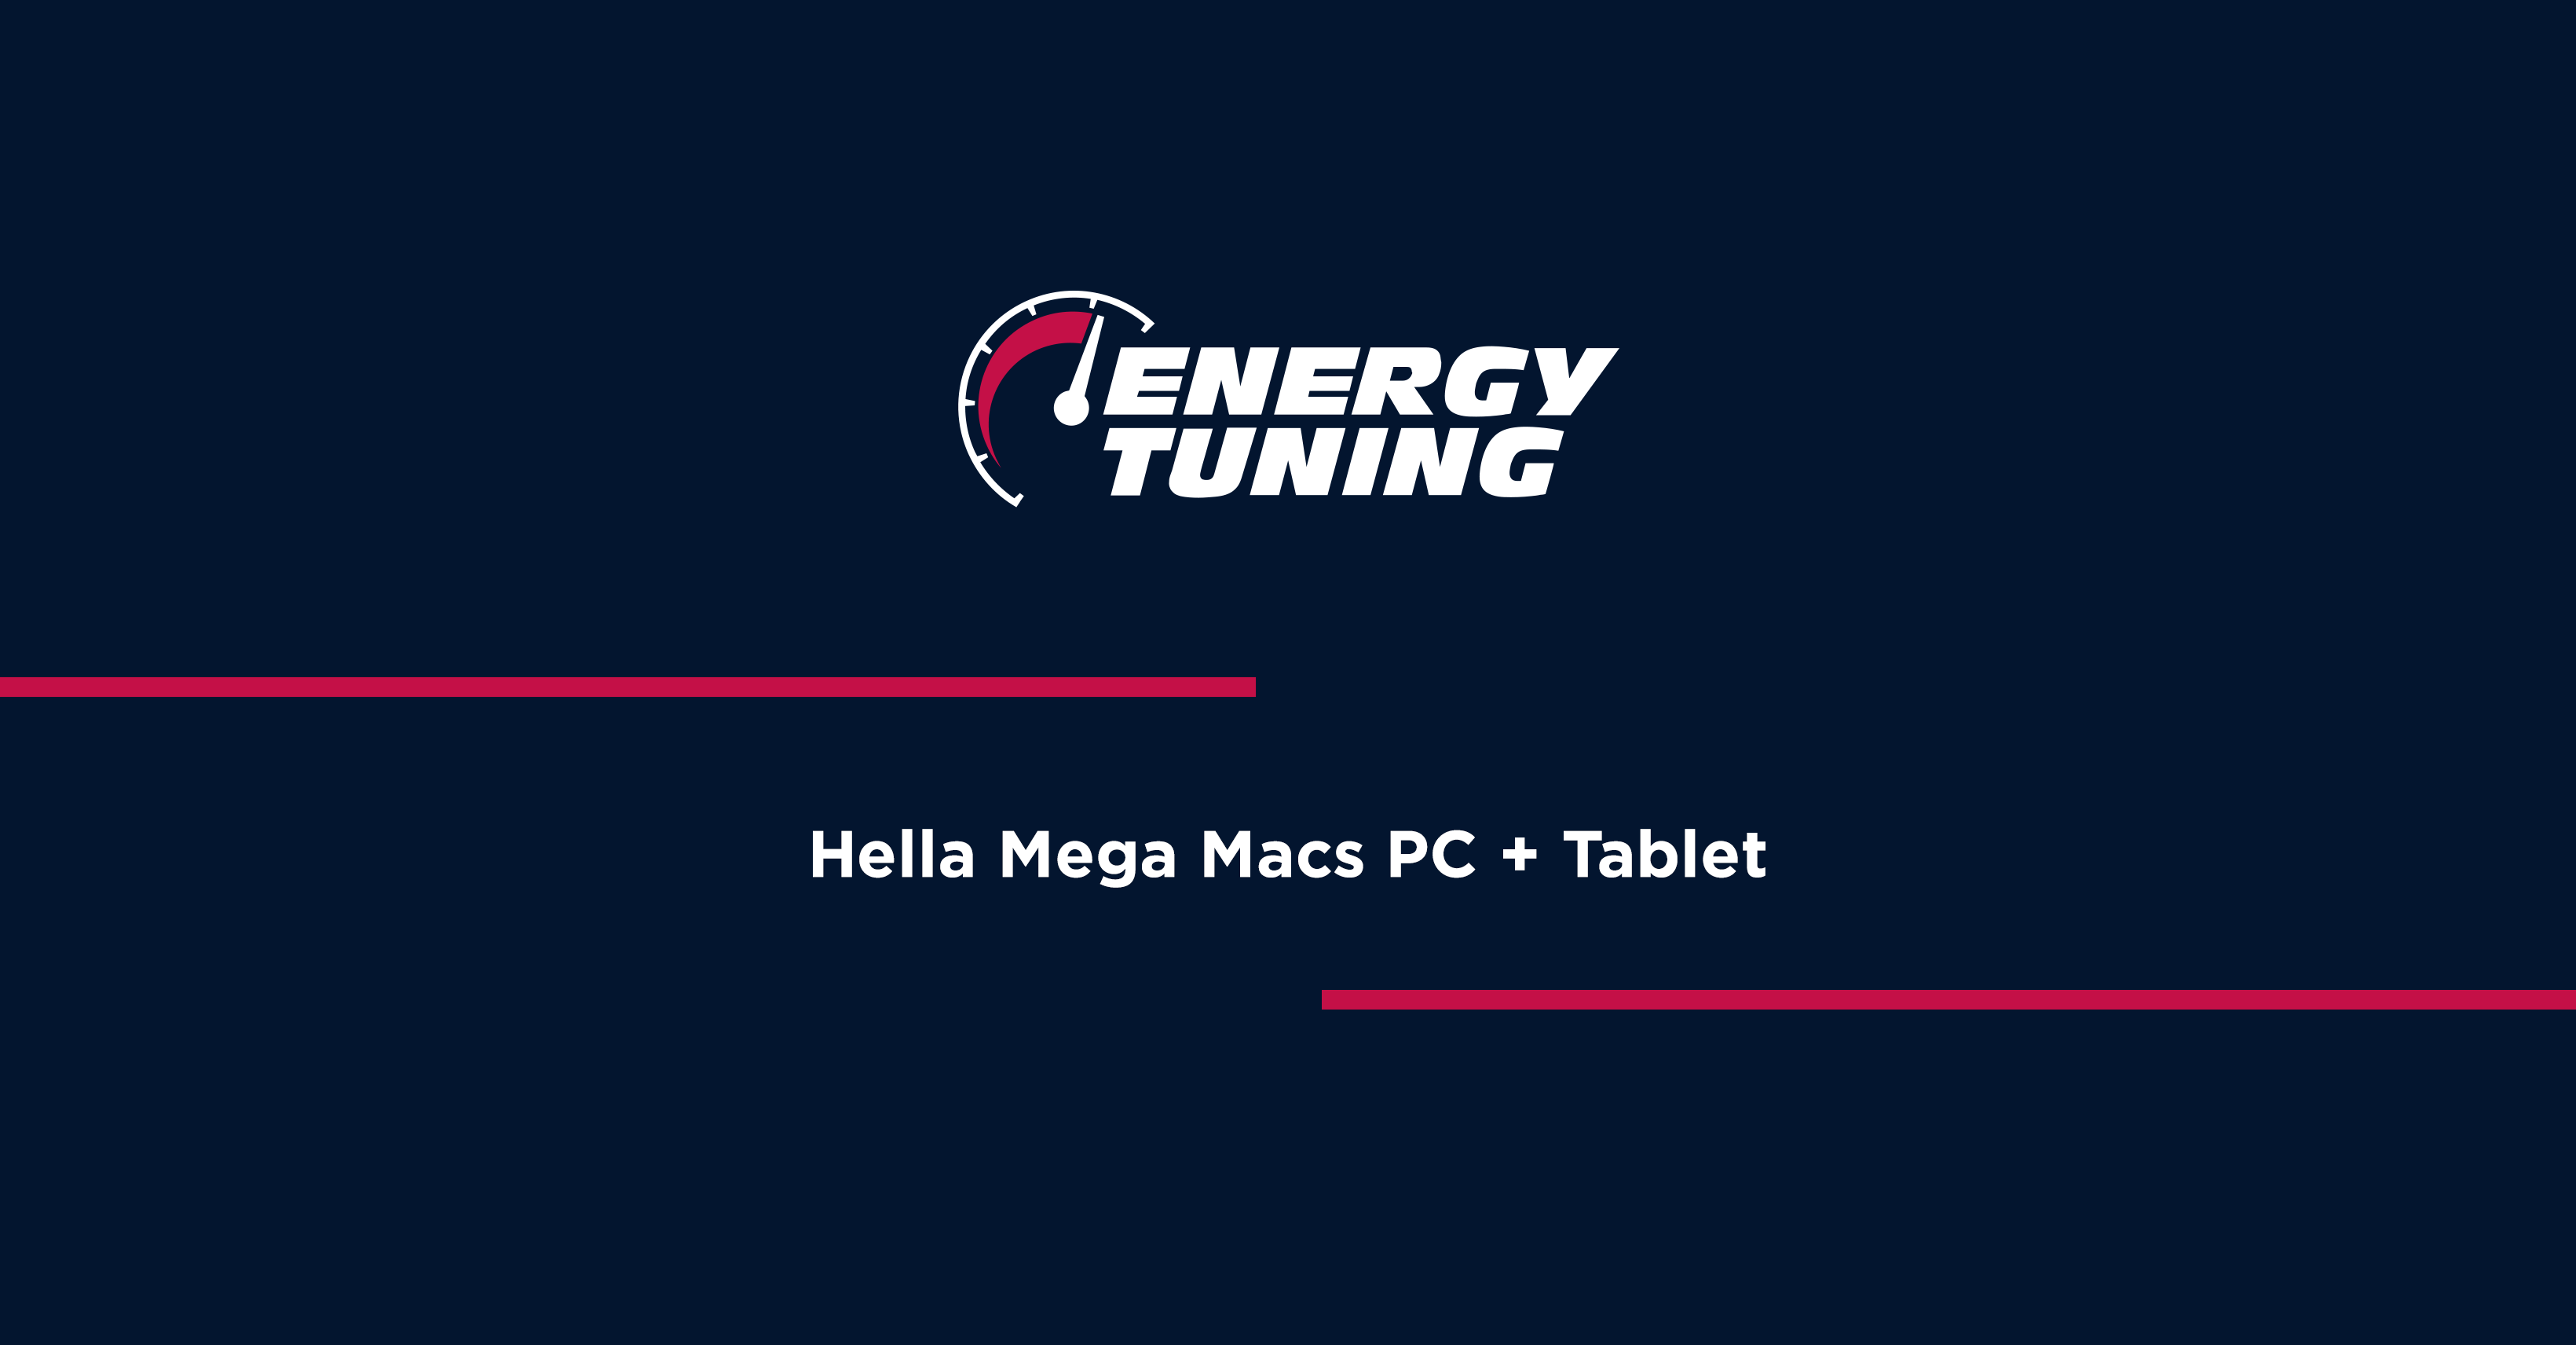 Hella Mega Macs PC + Tablet